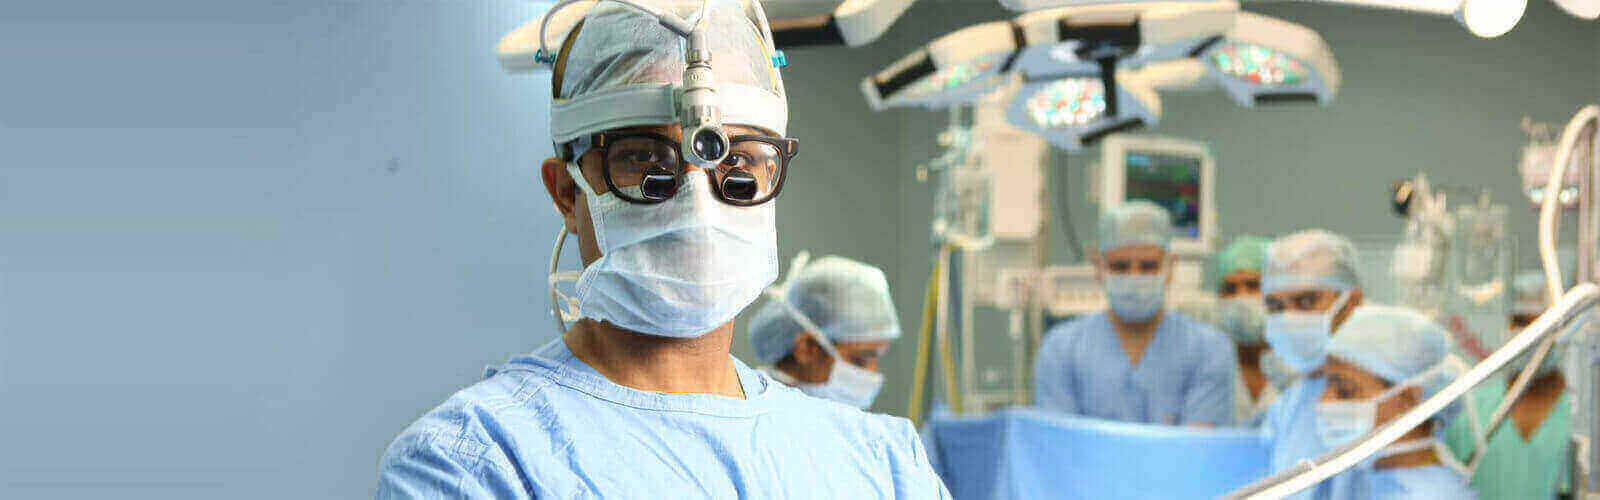 Heart Bypass Surgery in Africa